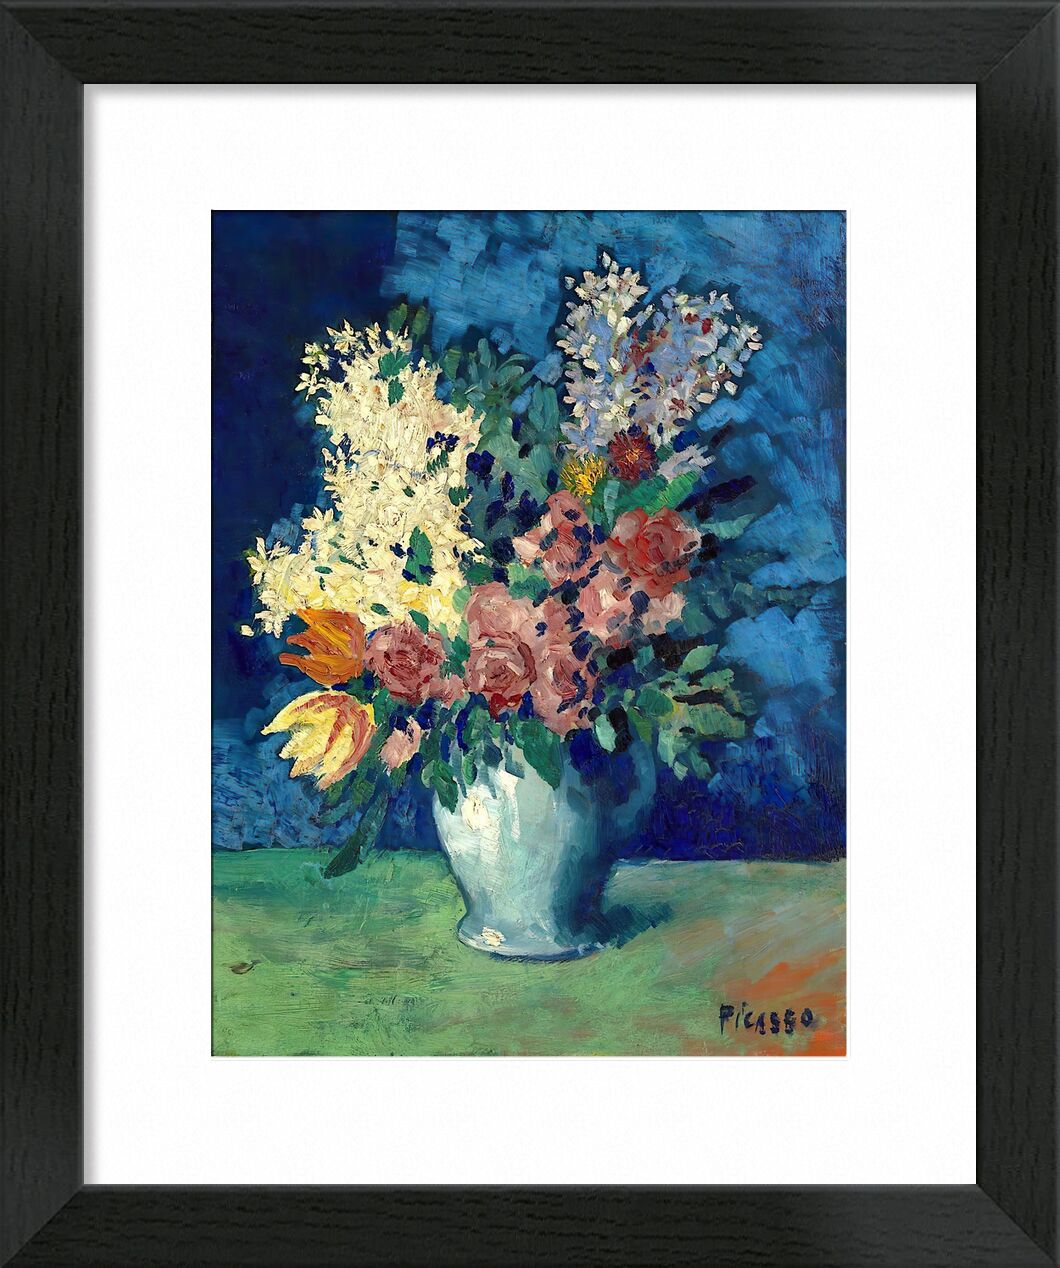 Flowers 1901 - Picasso von Bildende Kunst, Prodi Art, Picasso, Blumen, Malerei